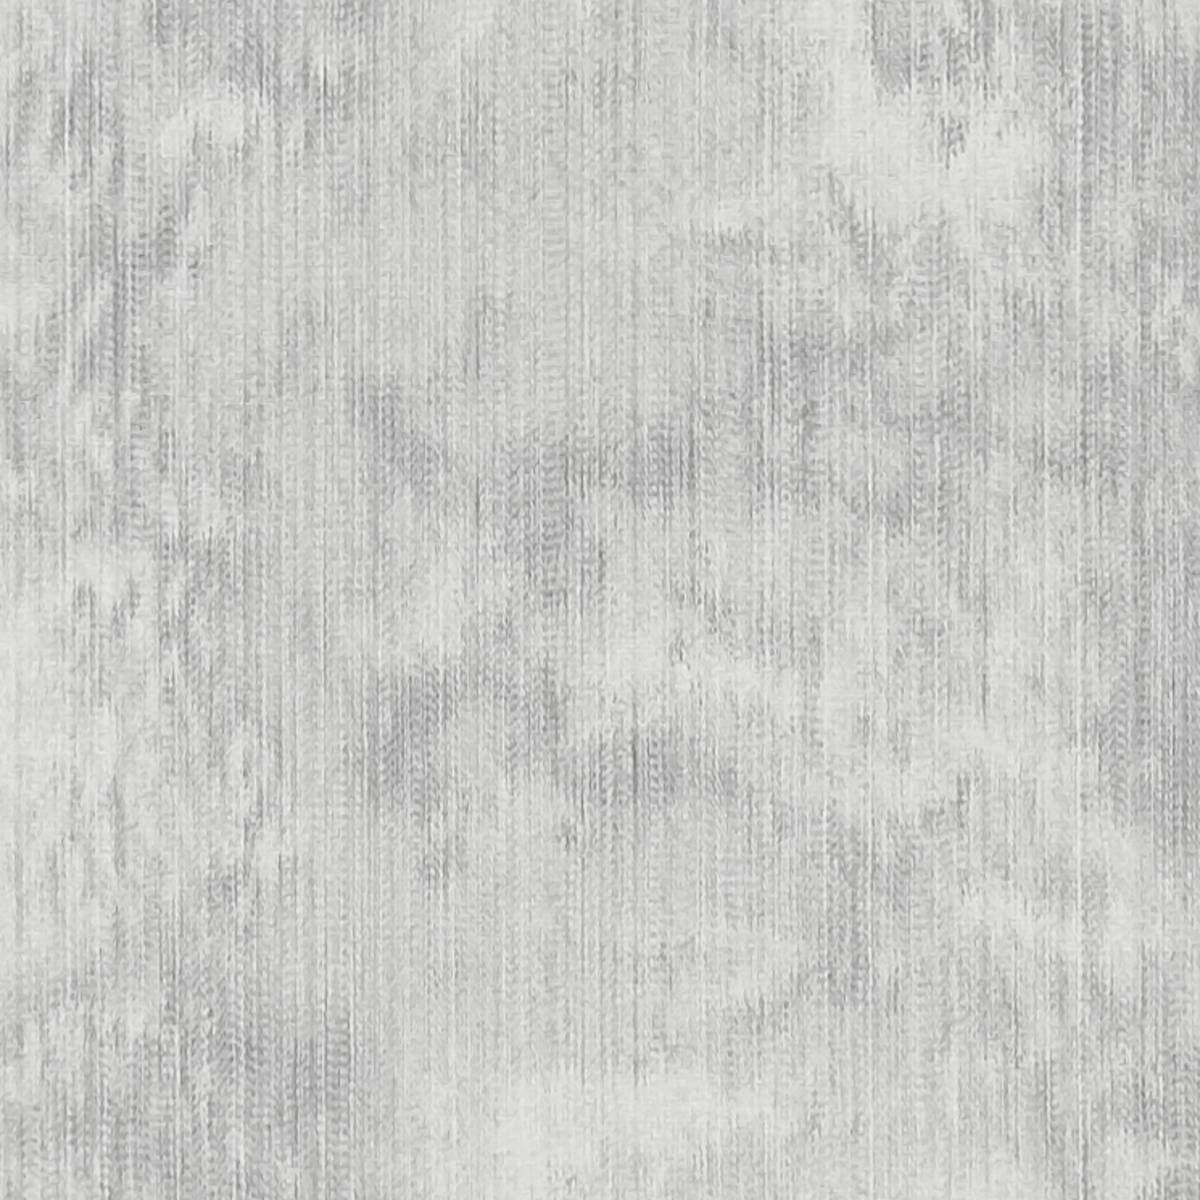 Haze Silver Fabric by Clarke & Clarke